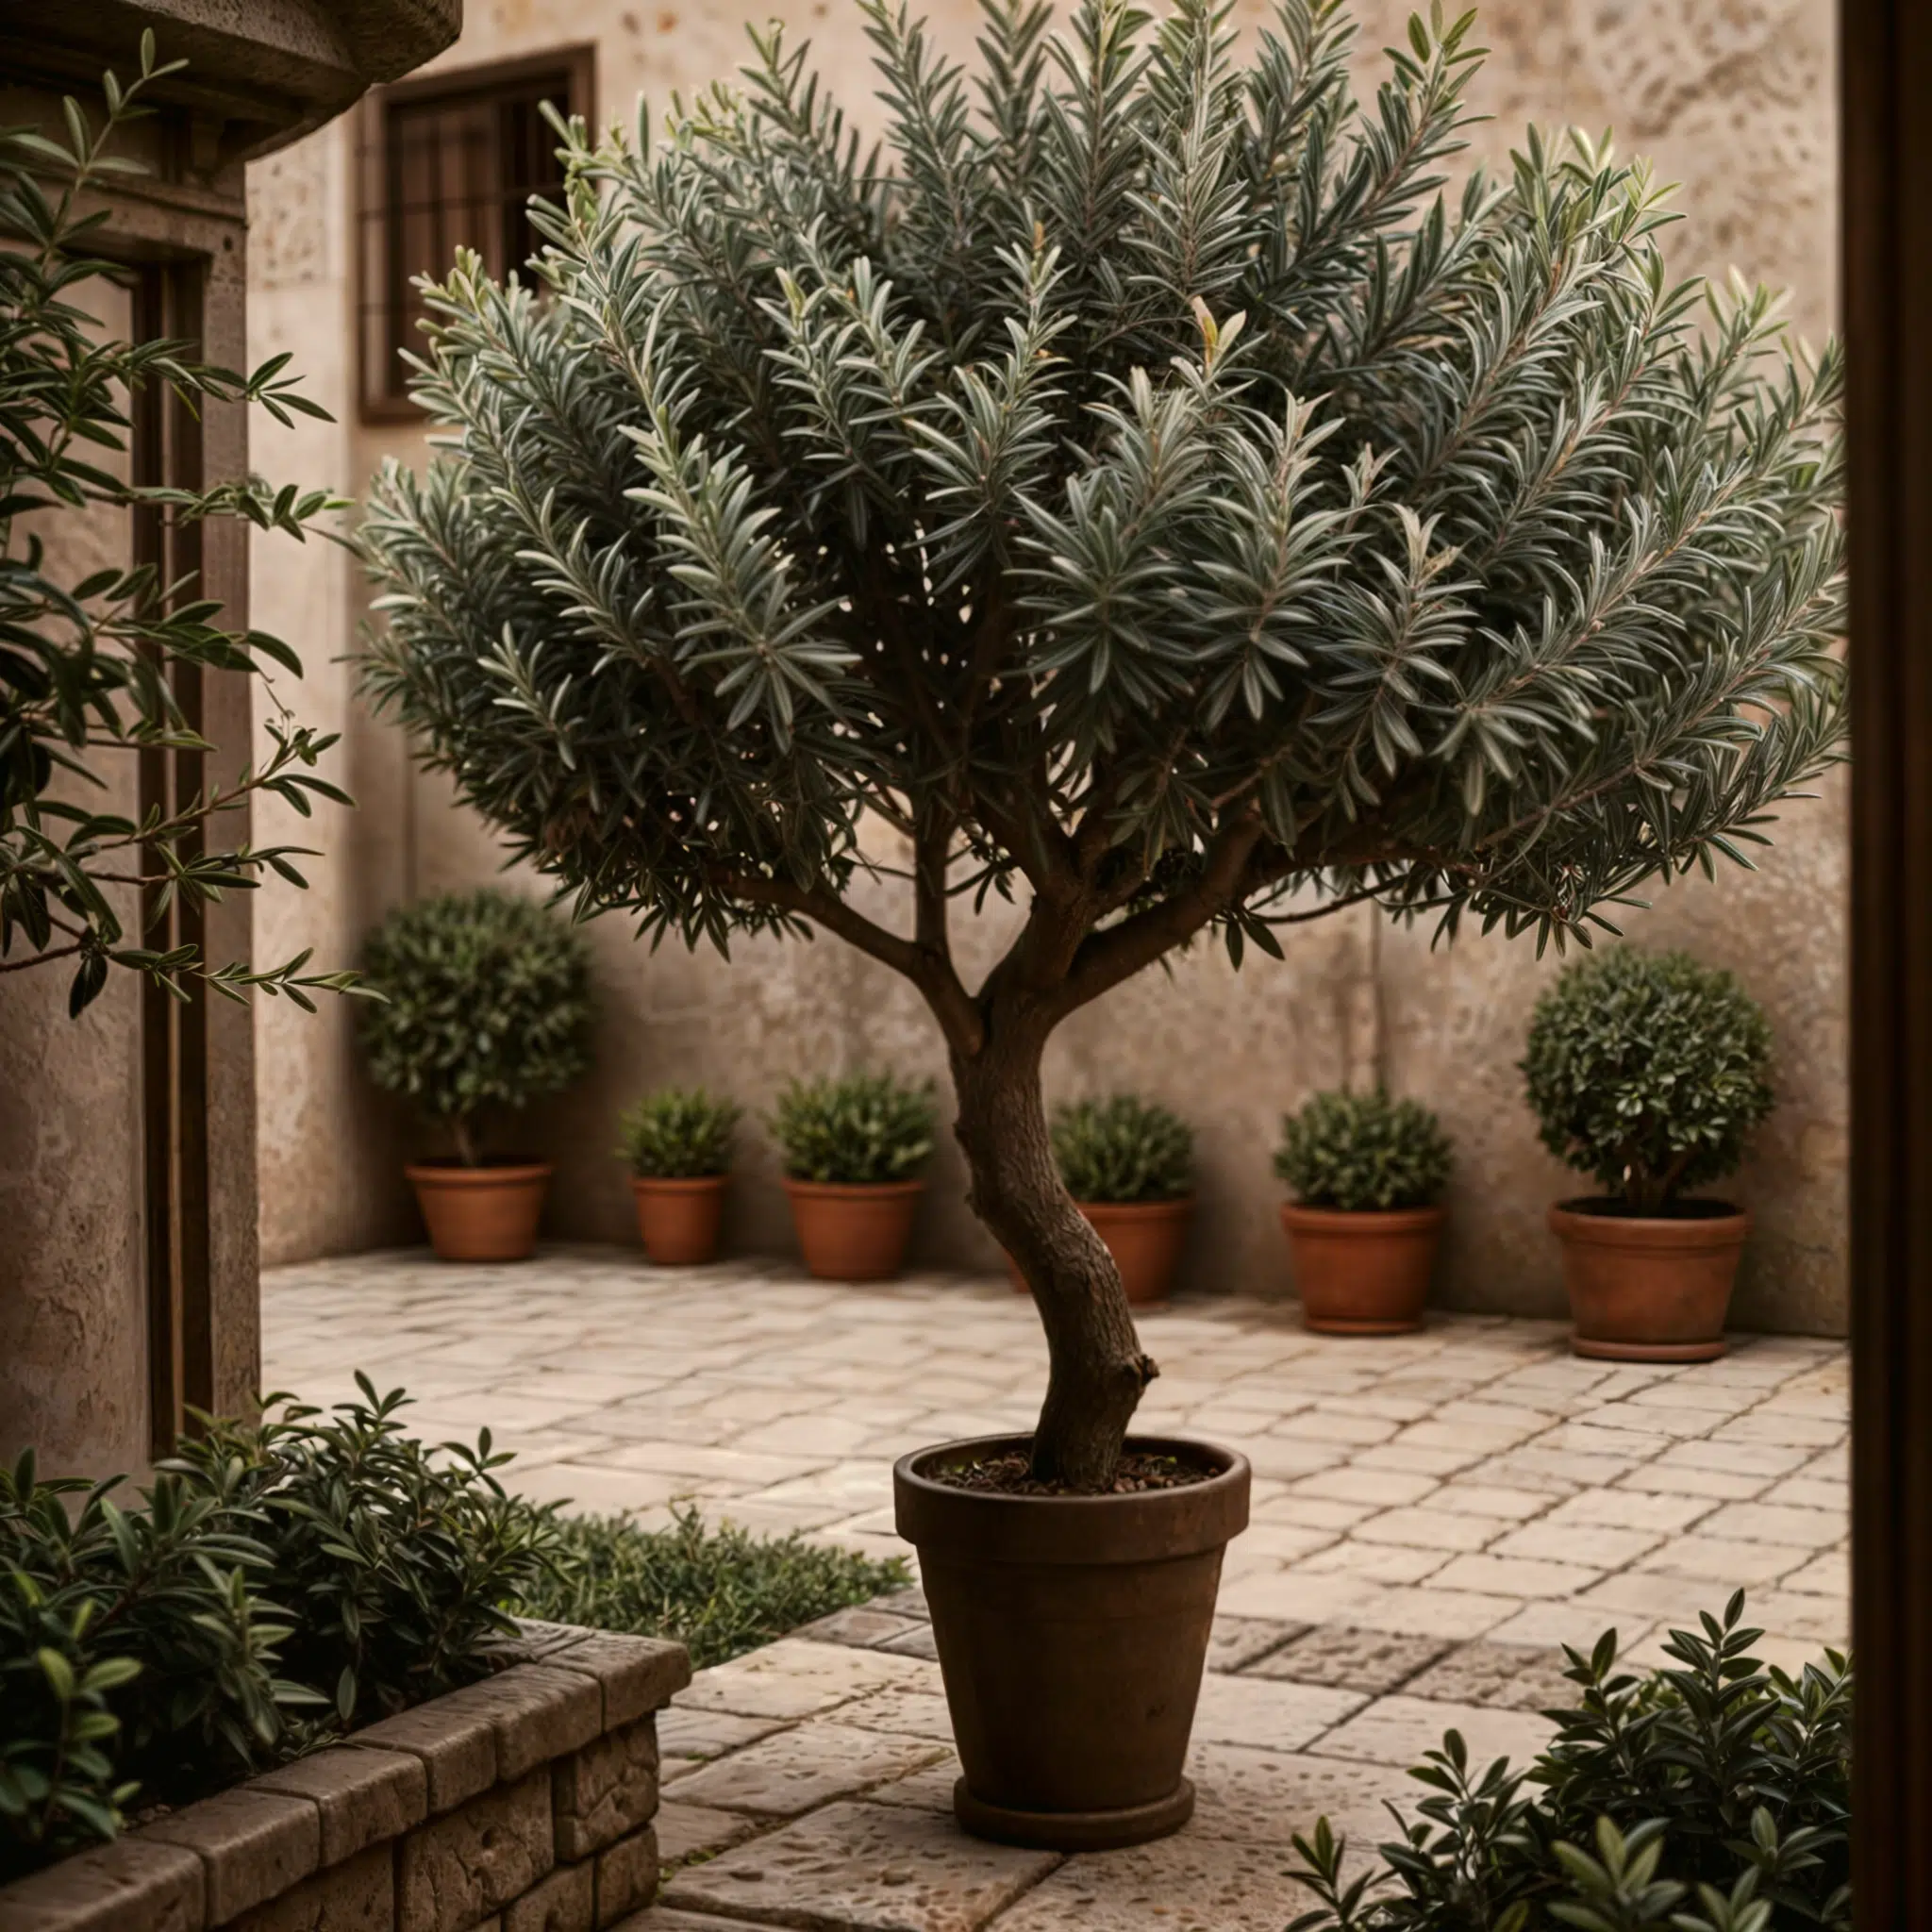 Olivo centenario en maceta ubicado en un patio adoquinado, rodeado de otras plantas en macetas, destacando su follaje denso y plateado bajo la luz suave.